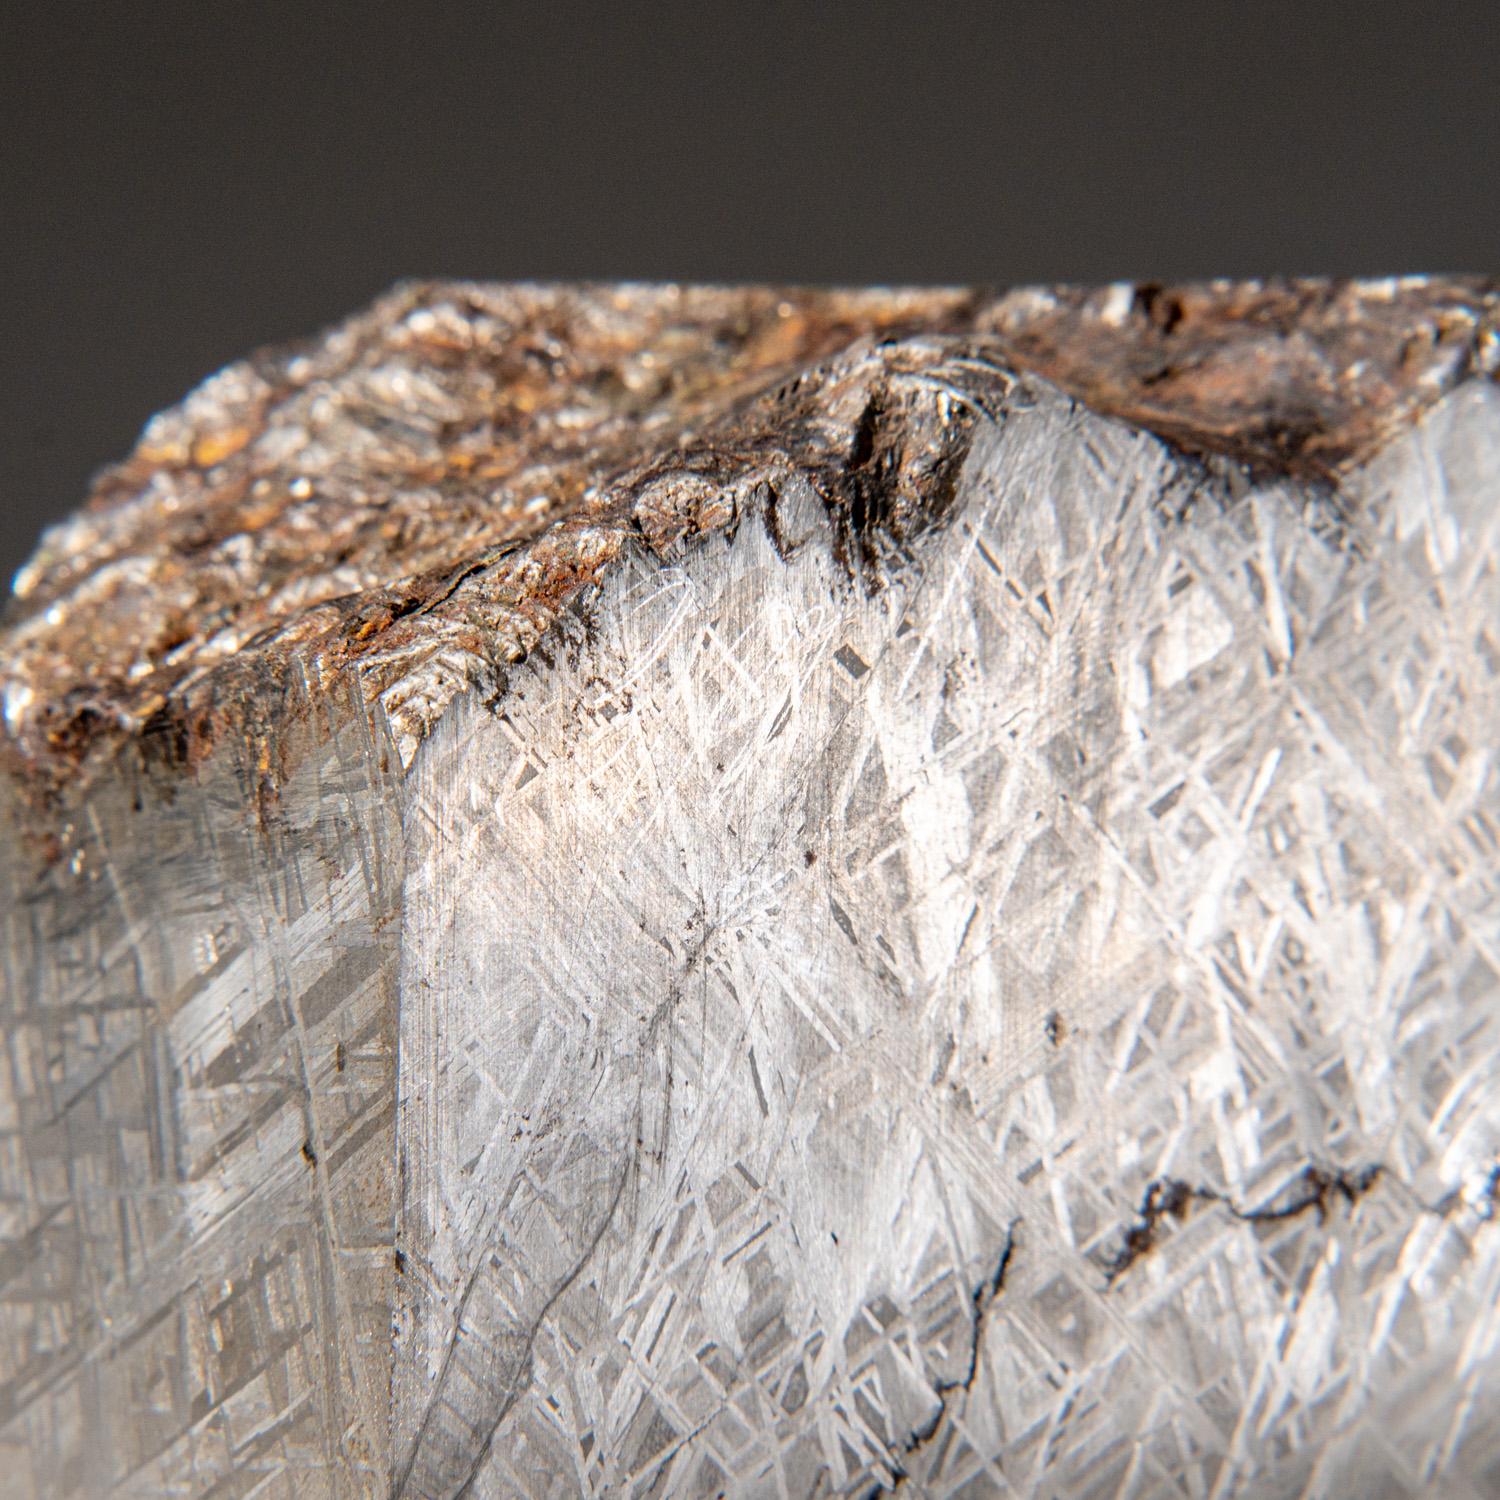 Rock Crystal Genuine Muonionalusta Meteorite (5.5 grams) For Sale